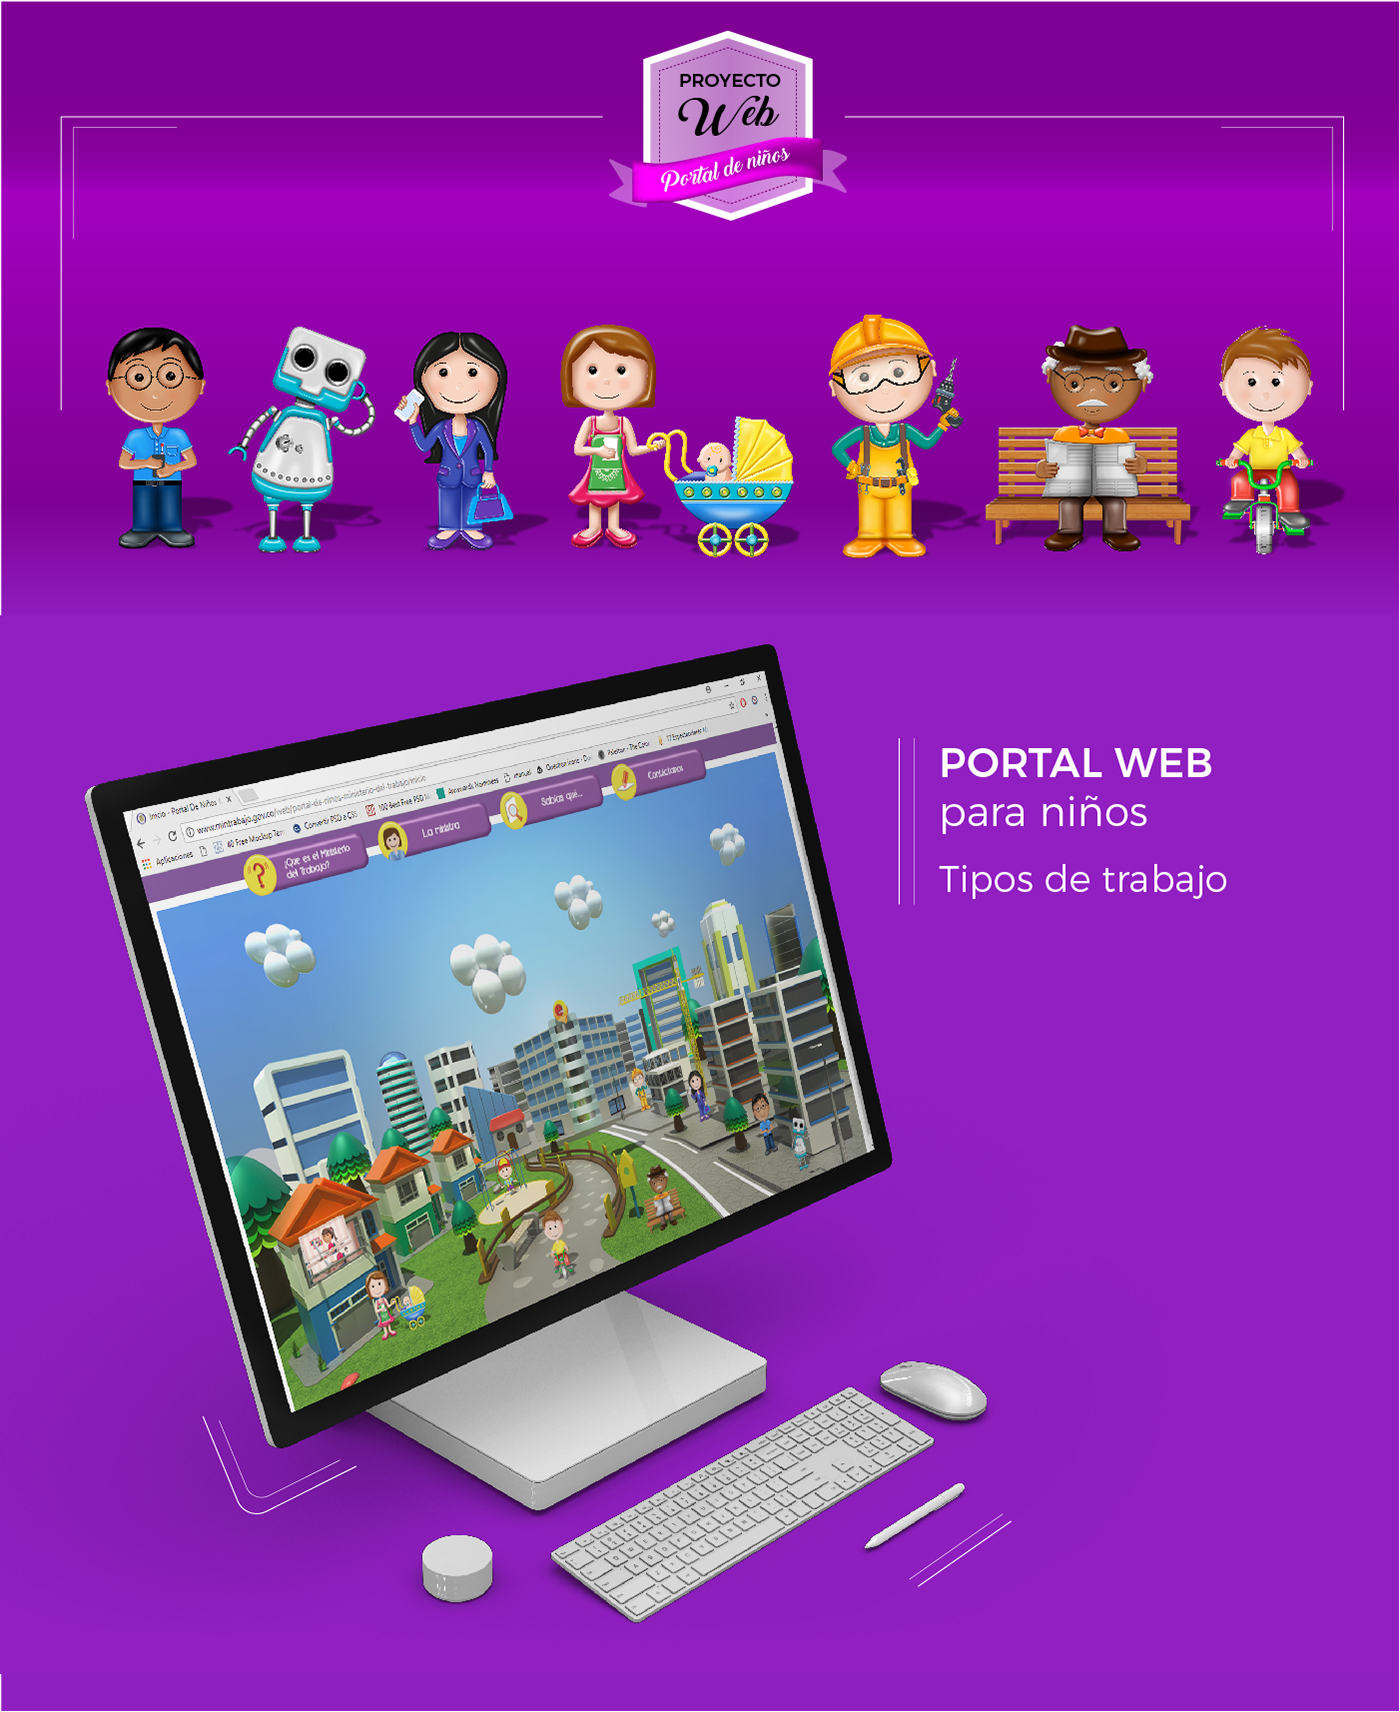 portal web ilustración digital interactive web portal ilustración infantil Web digital niños trabajo design a portal